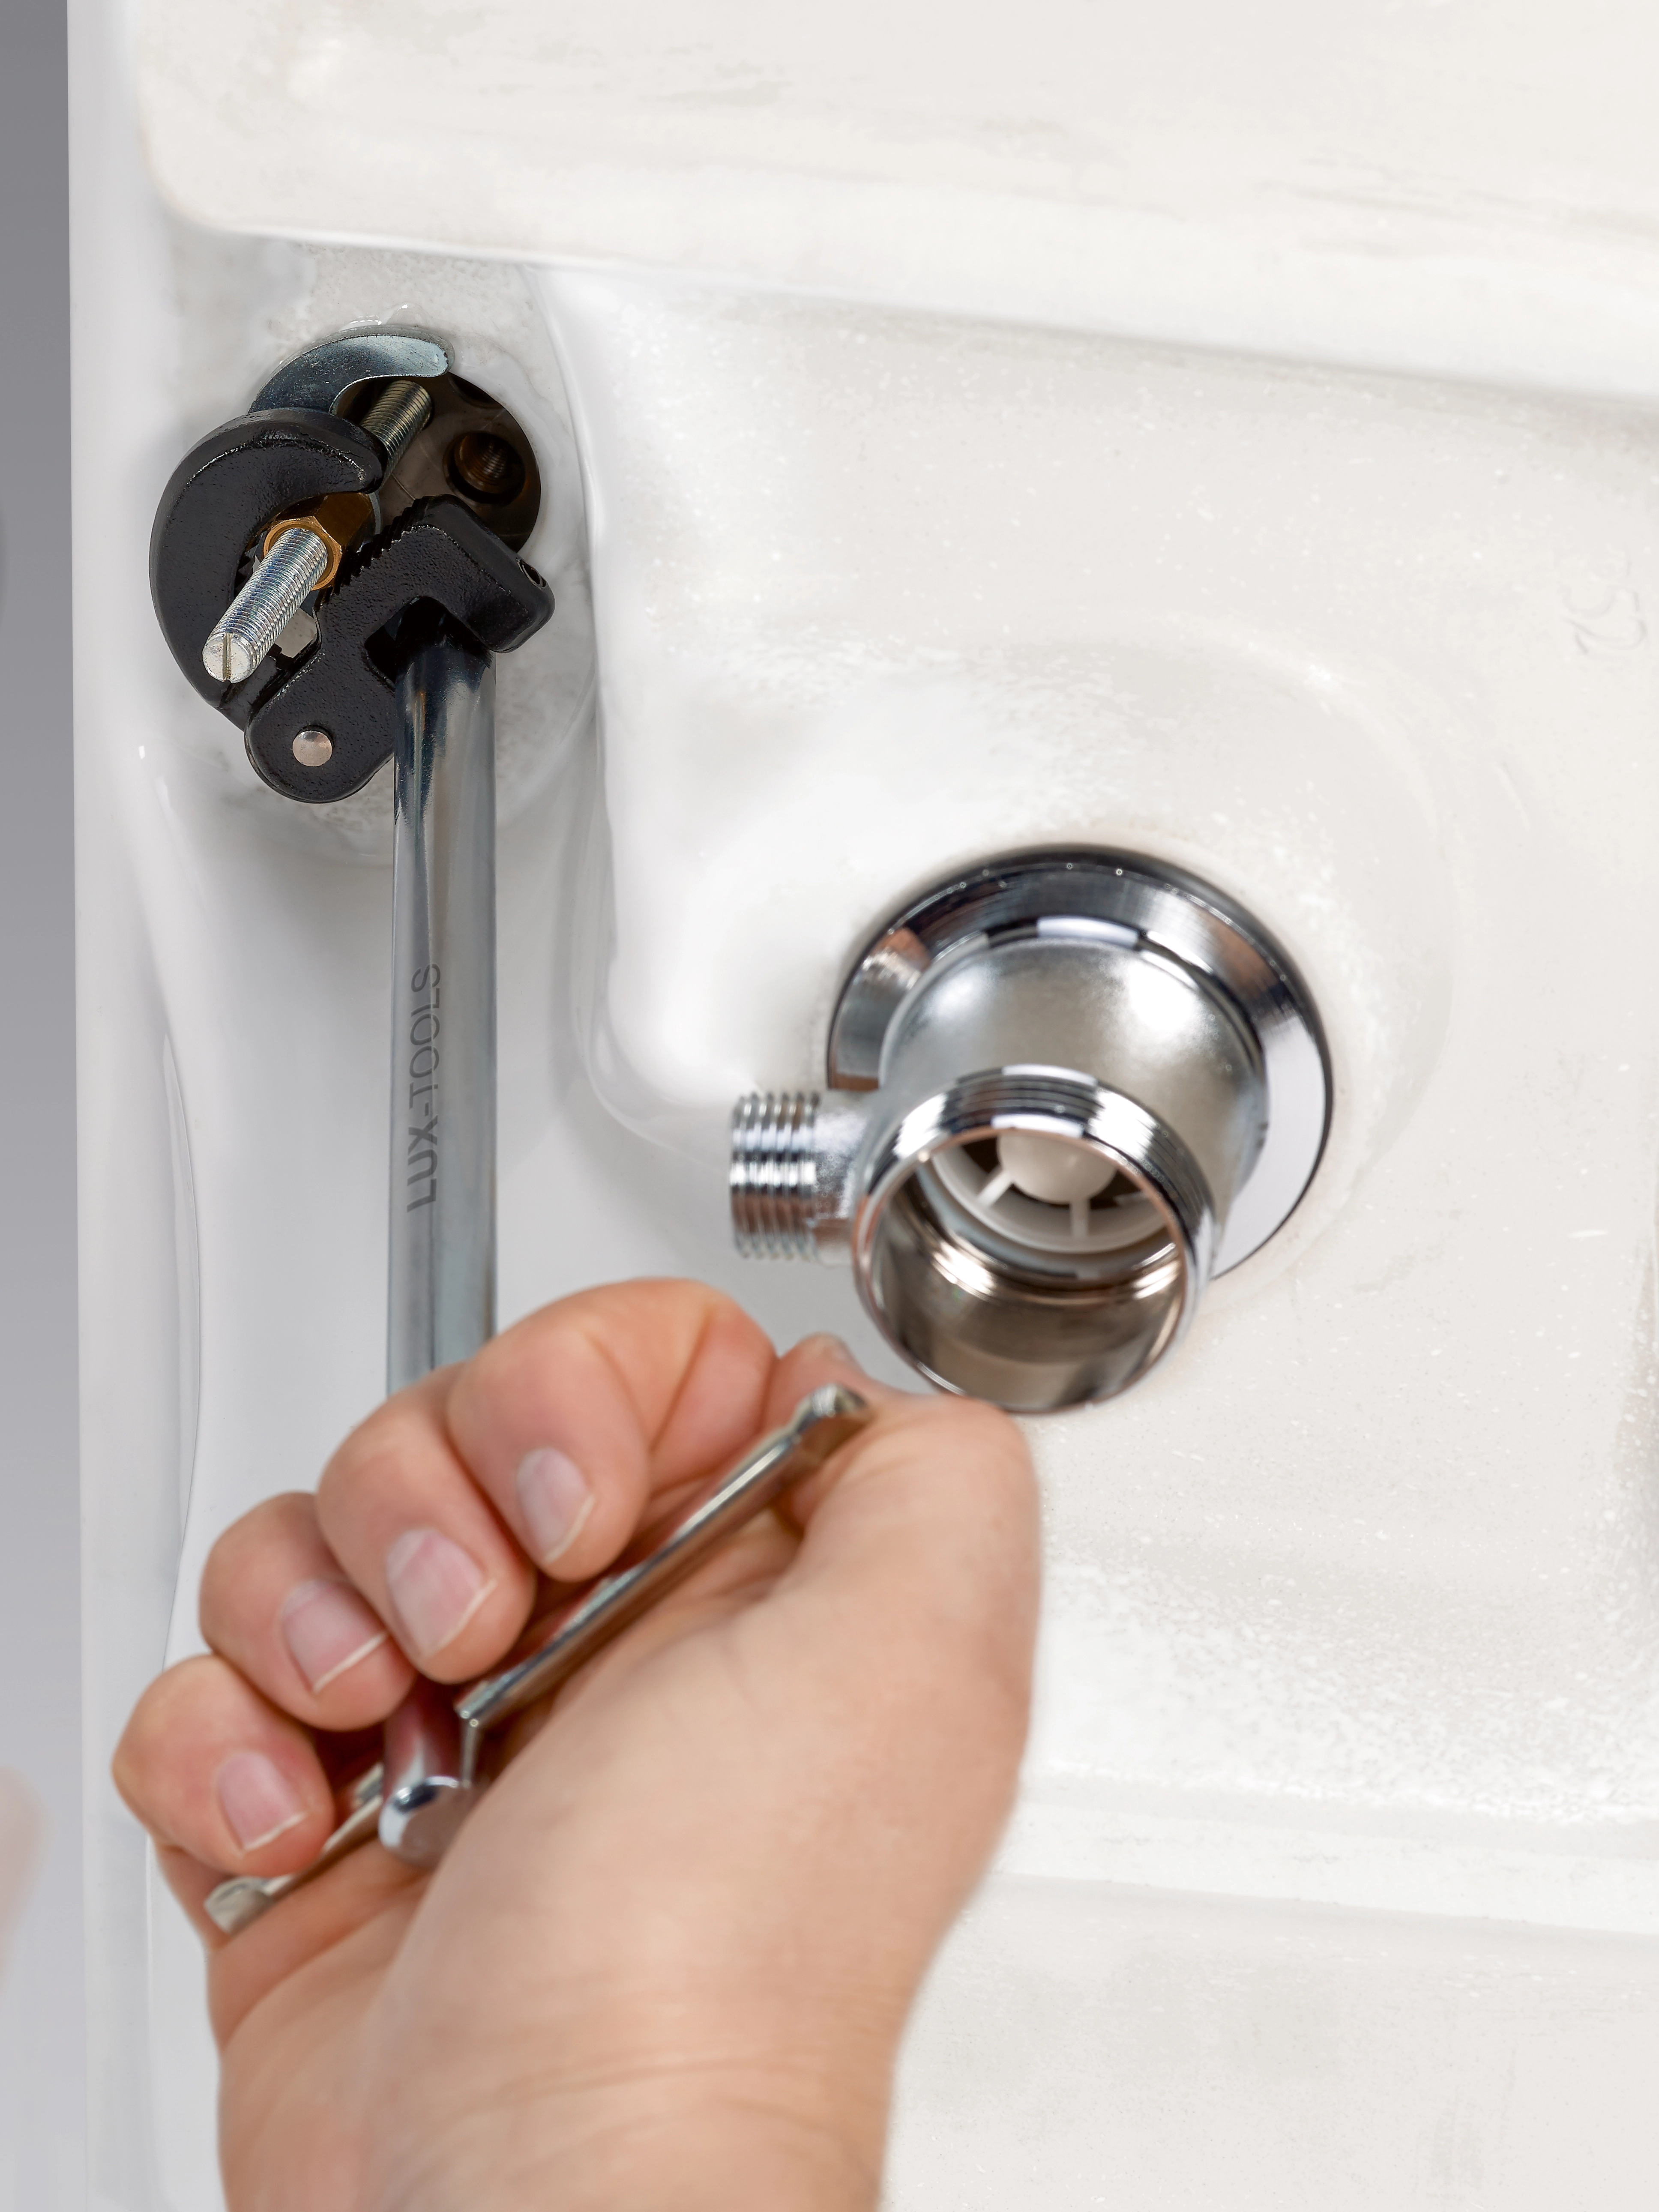 Chiave rubinetti 395 Articolata per Dadi 15 - 32 mm (5/8- 1 1/4)  003950001